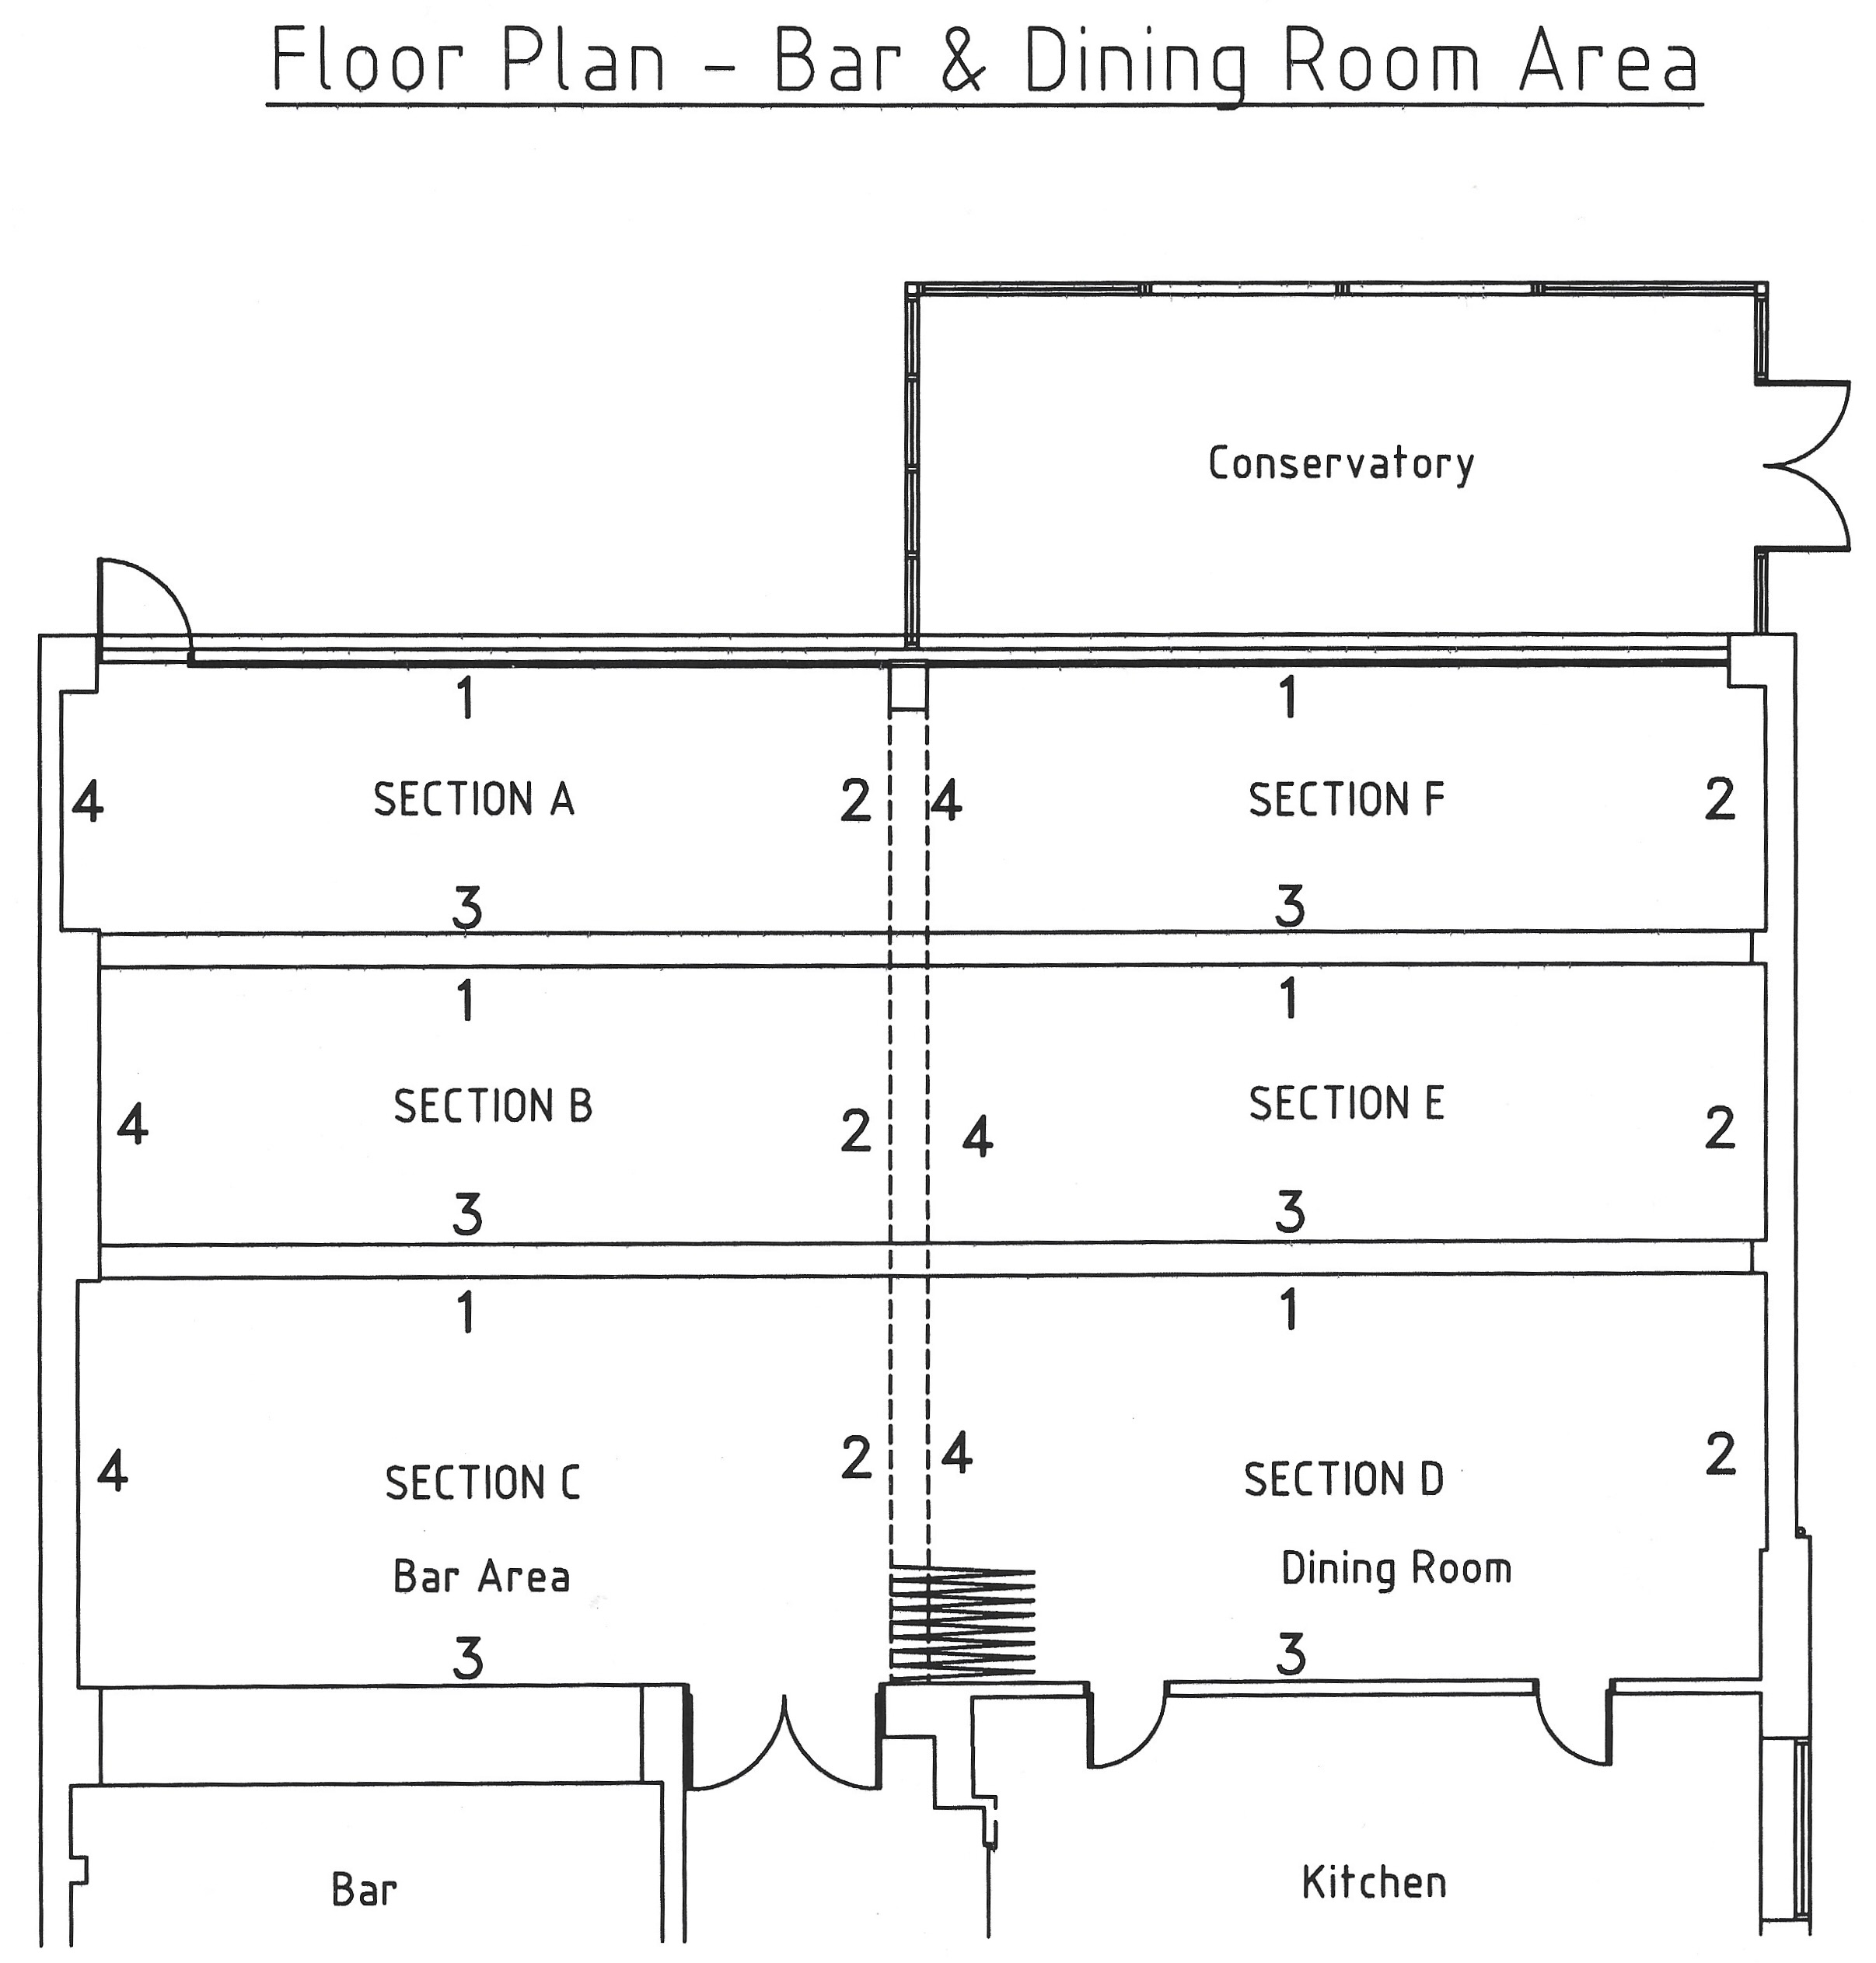 Bar & Dining Room floor plan